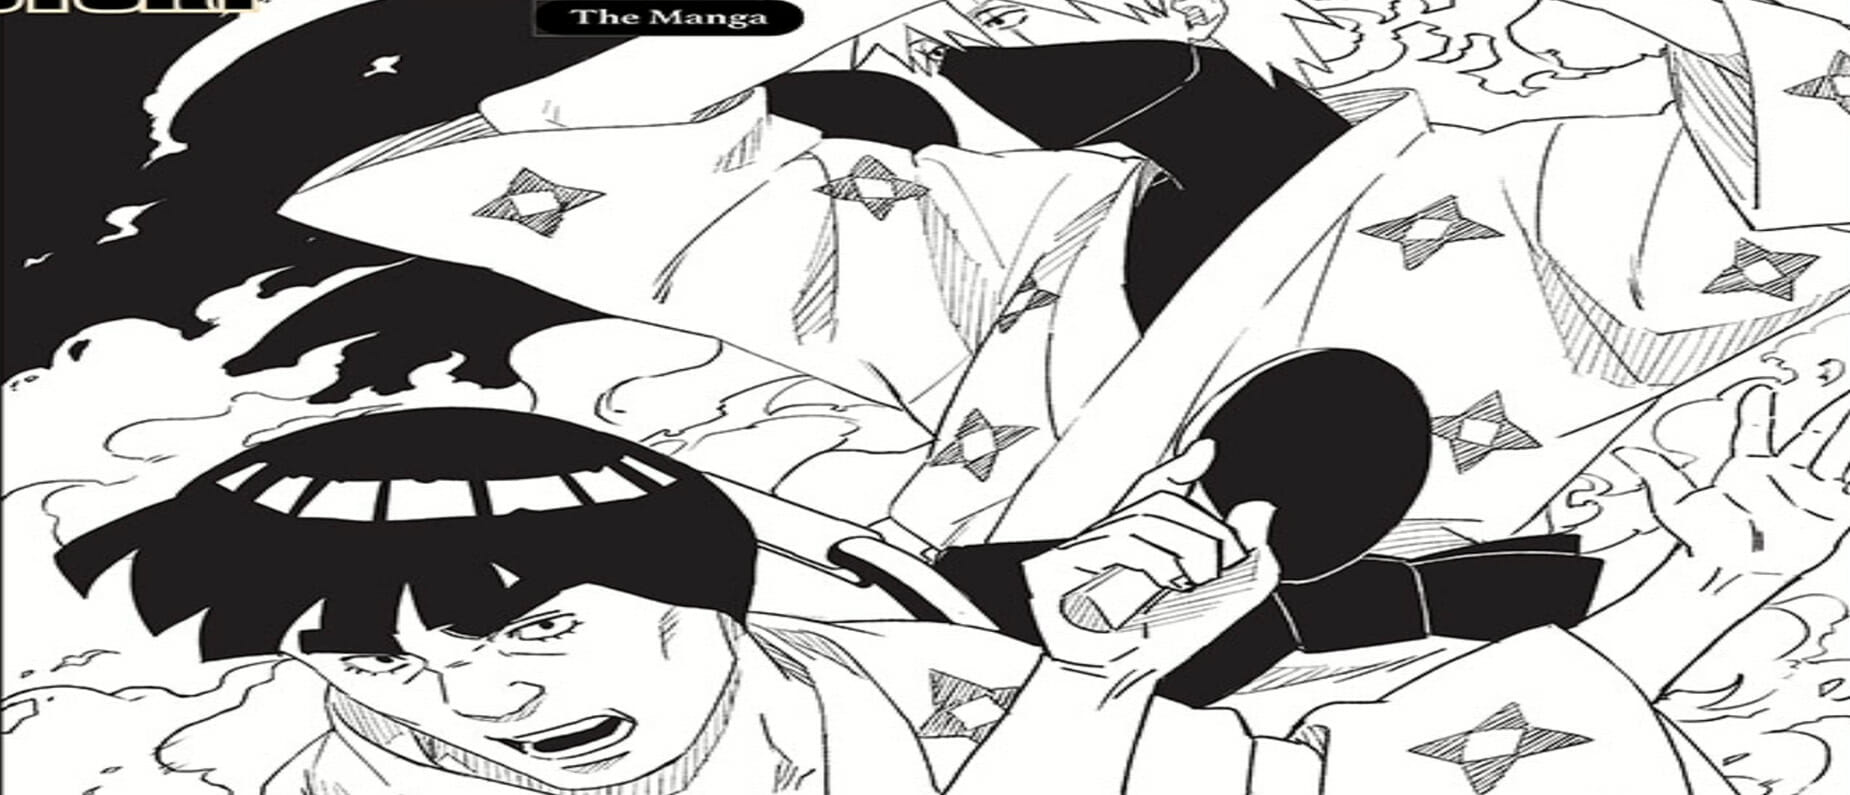 Sarada Mangekyo Sharingan Awakening Triggers Long-Awaited Boruto  Development - Comic Book Revolution